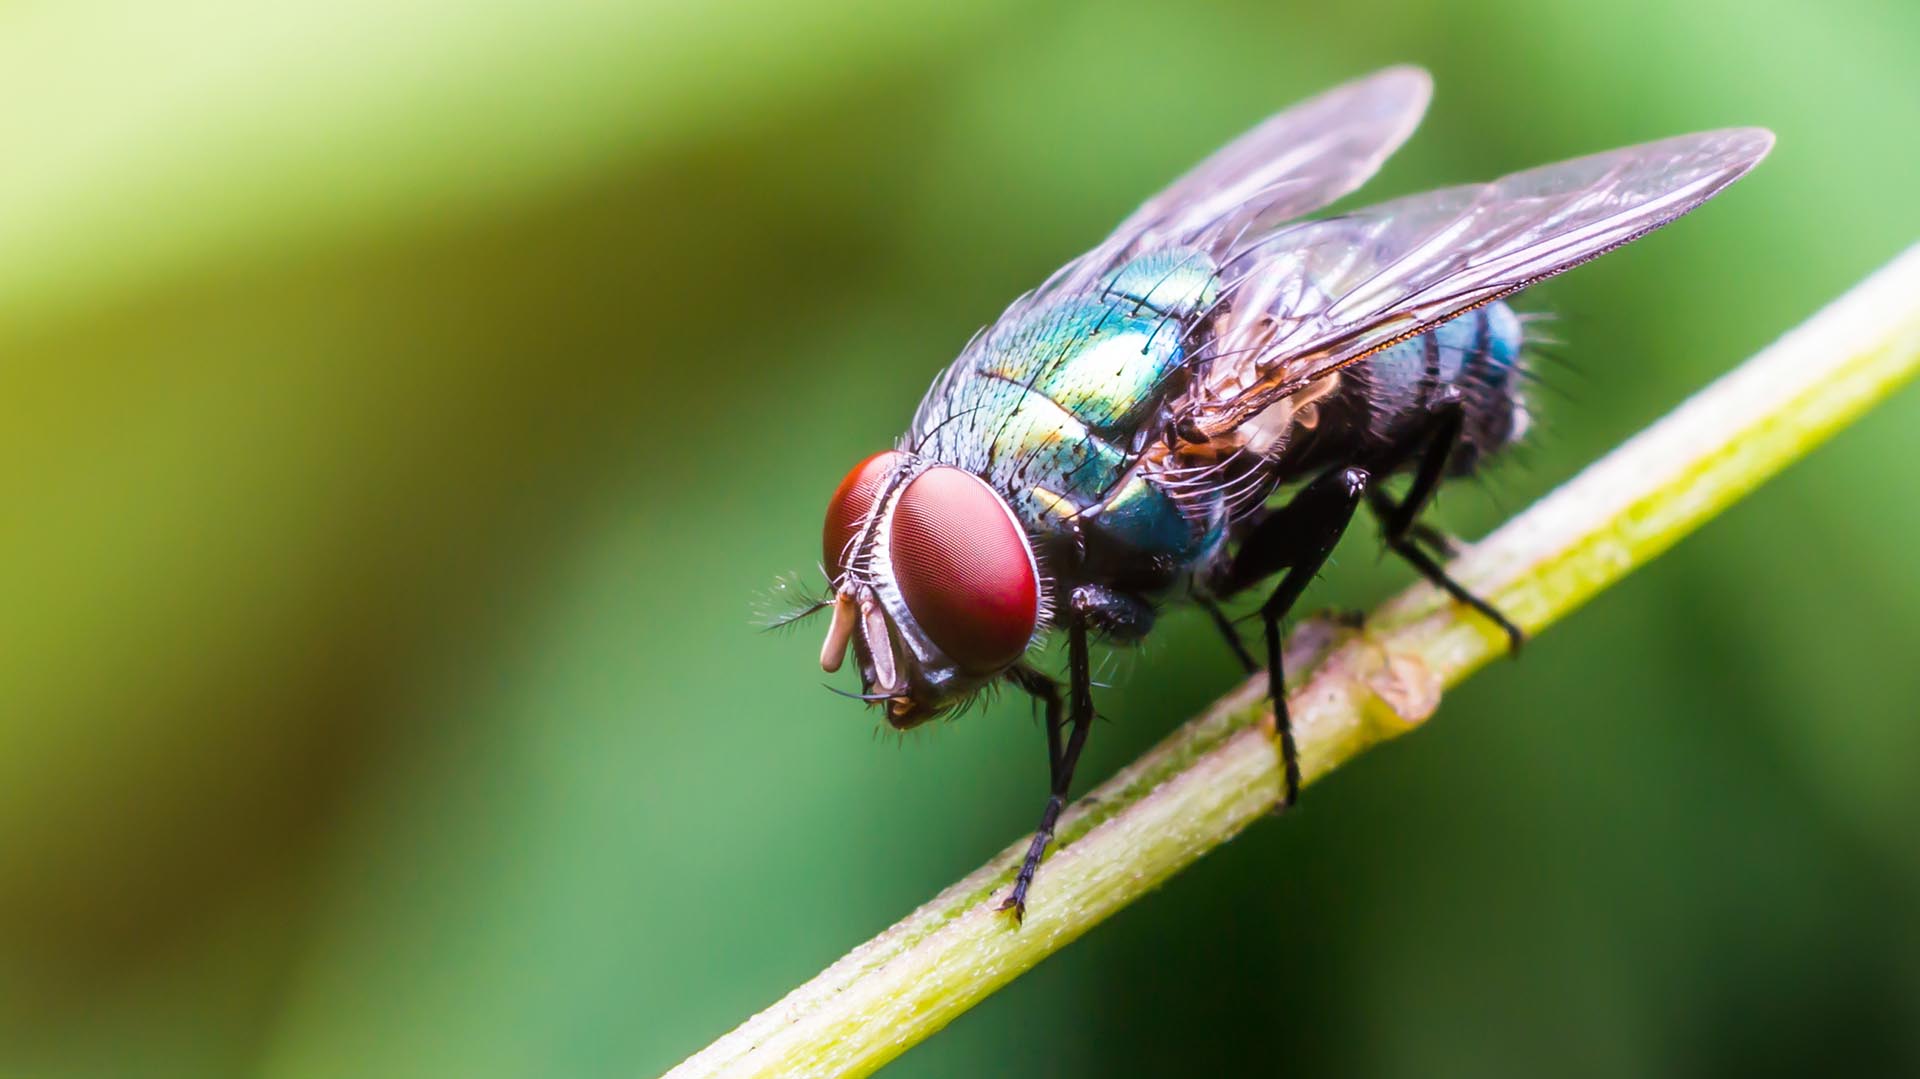 Entre 2004 y 2017, la cantidad de insectos voladores en el Reino Unido disminuyó en un 58,5%
(Getty Images) 